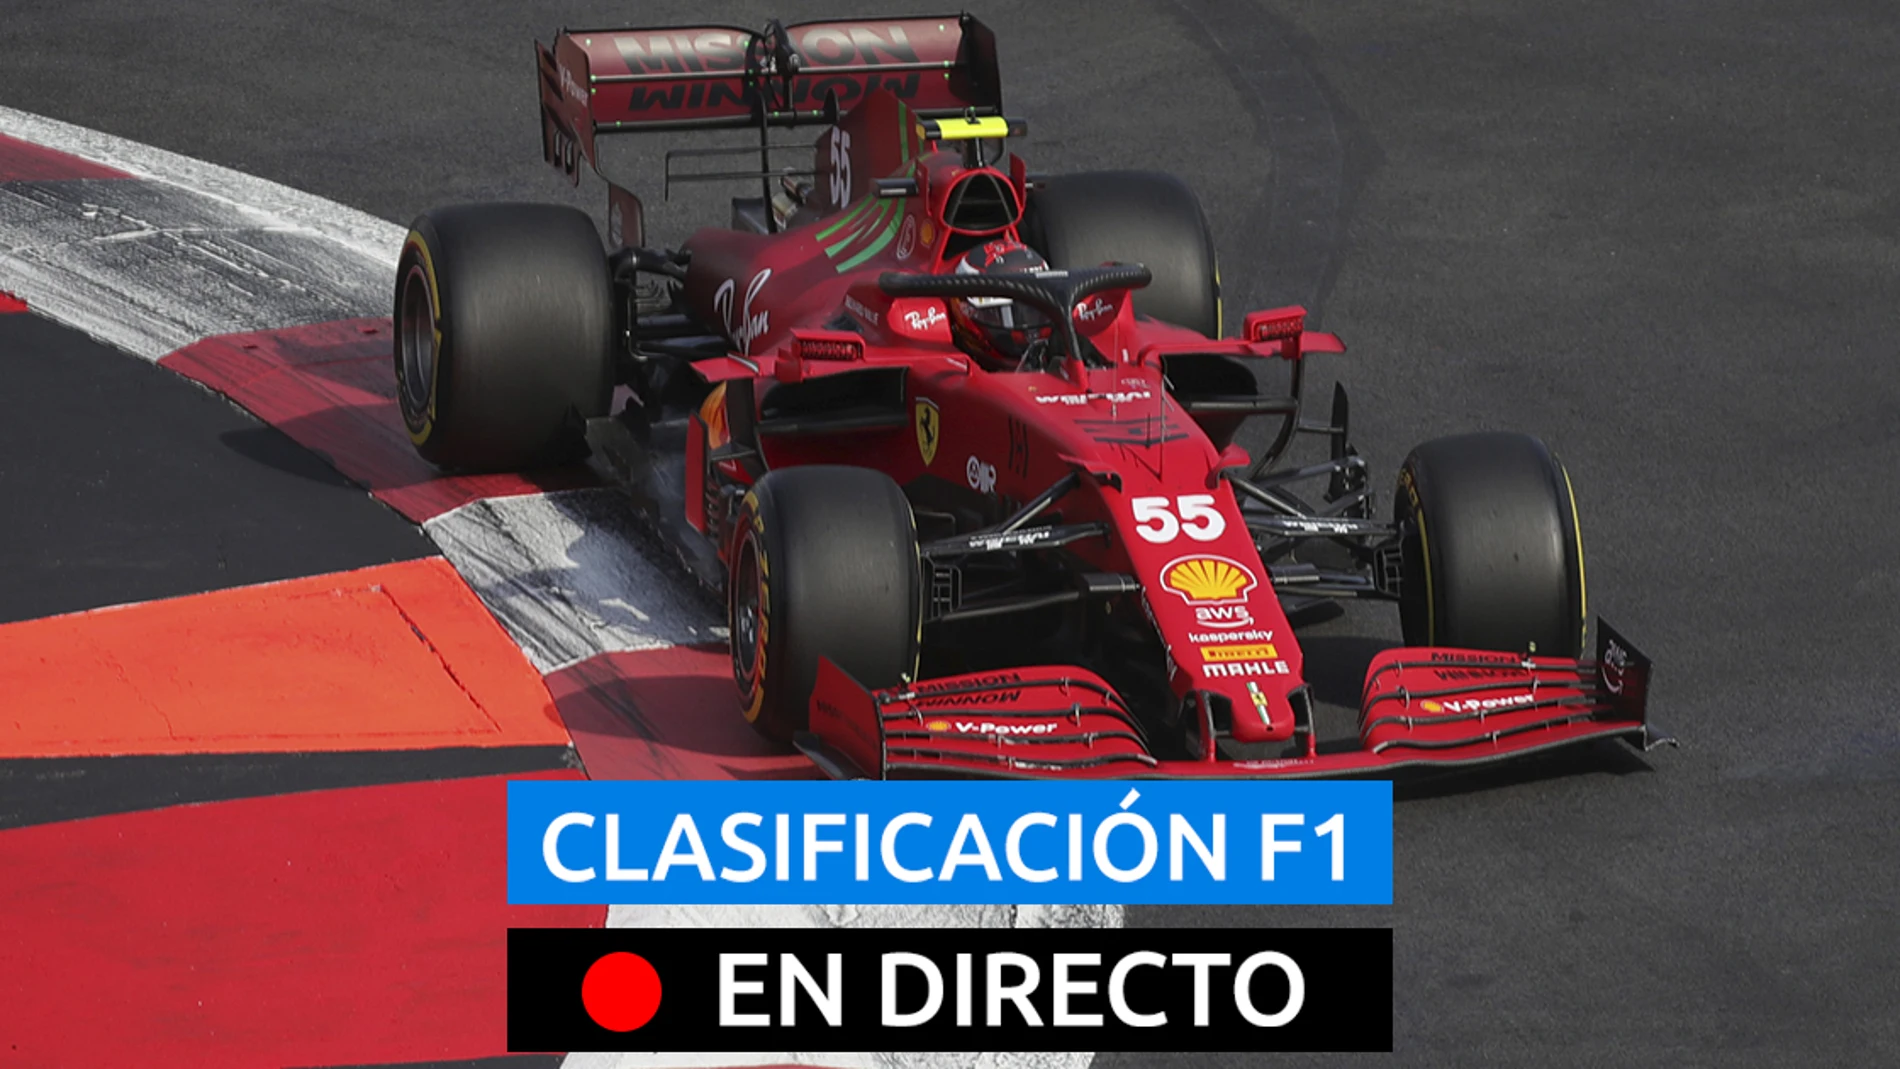 Carlos Sainz, en el GP de México